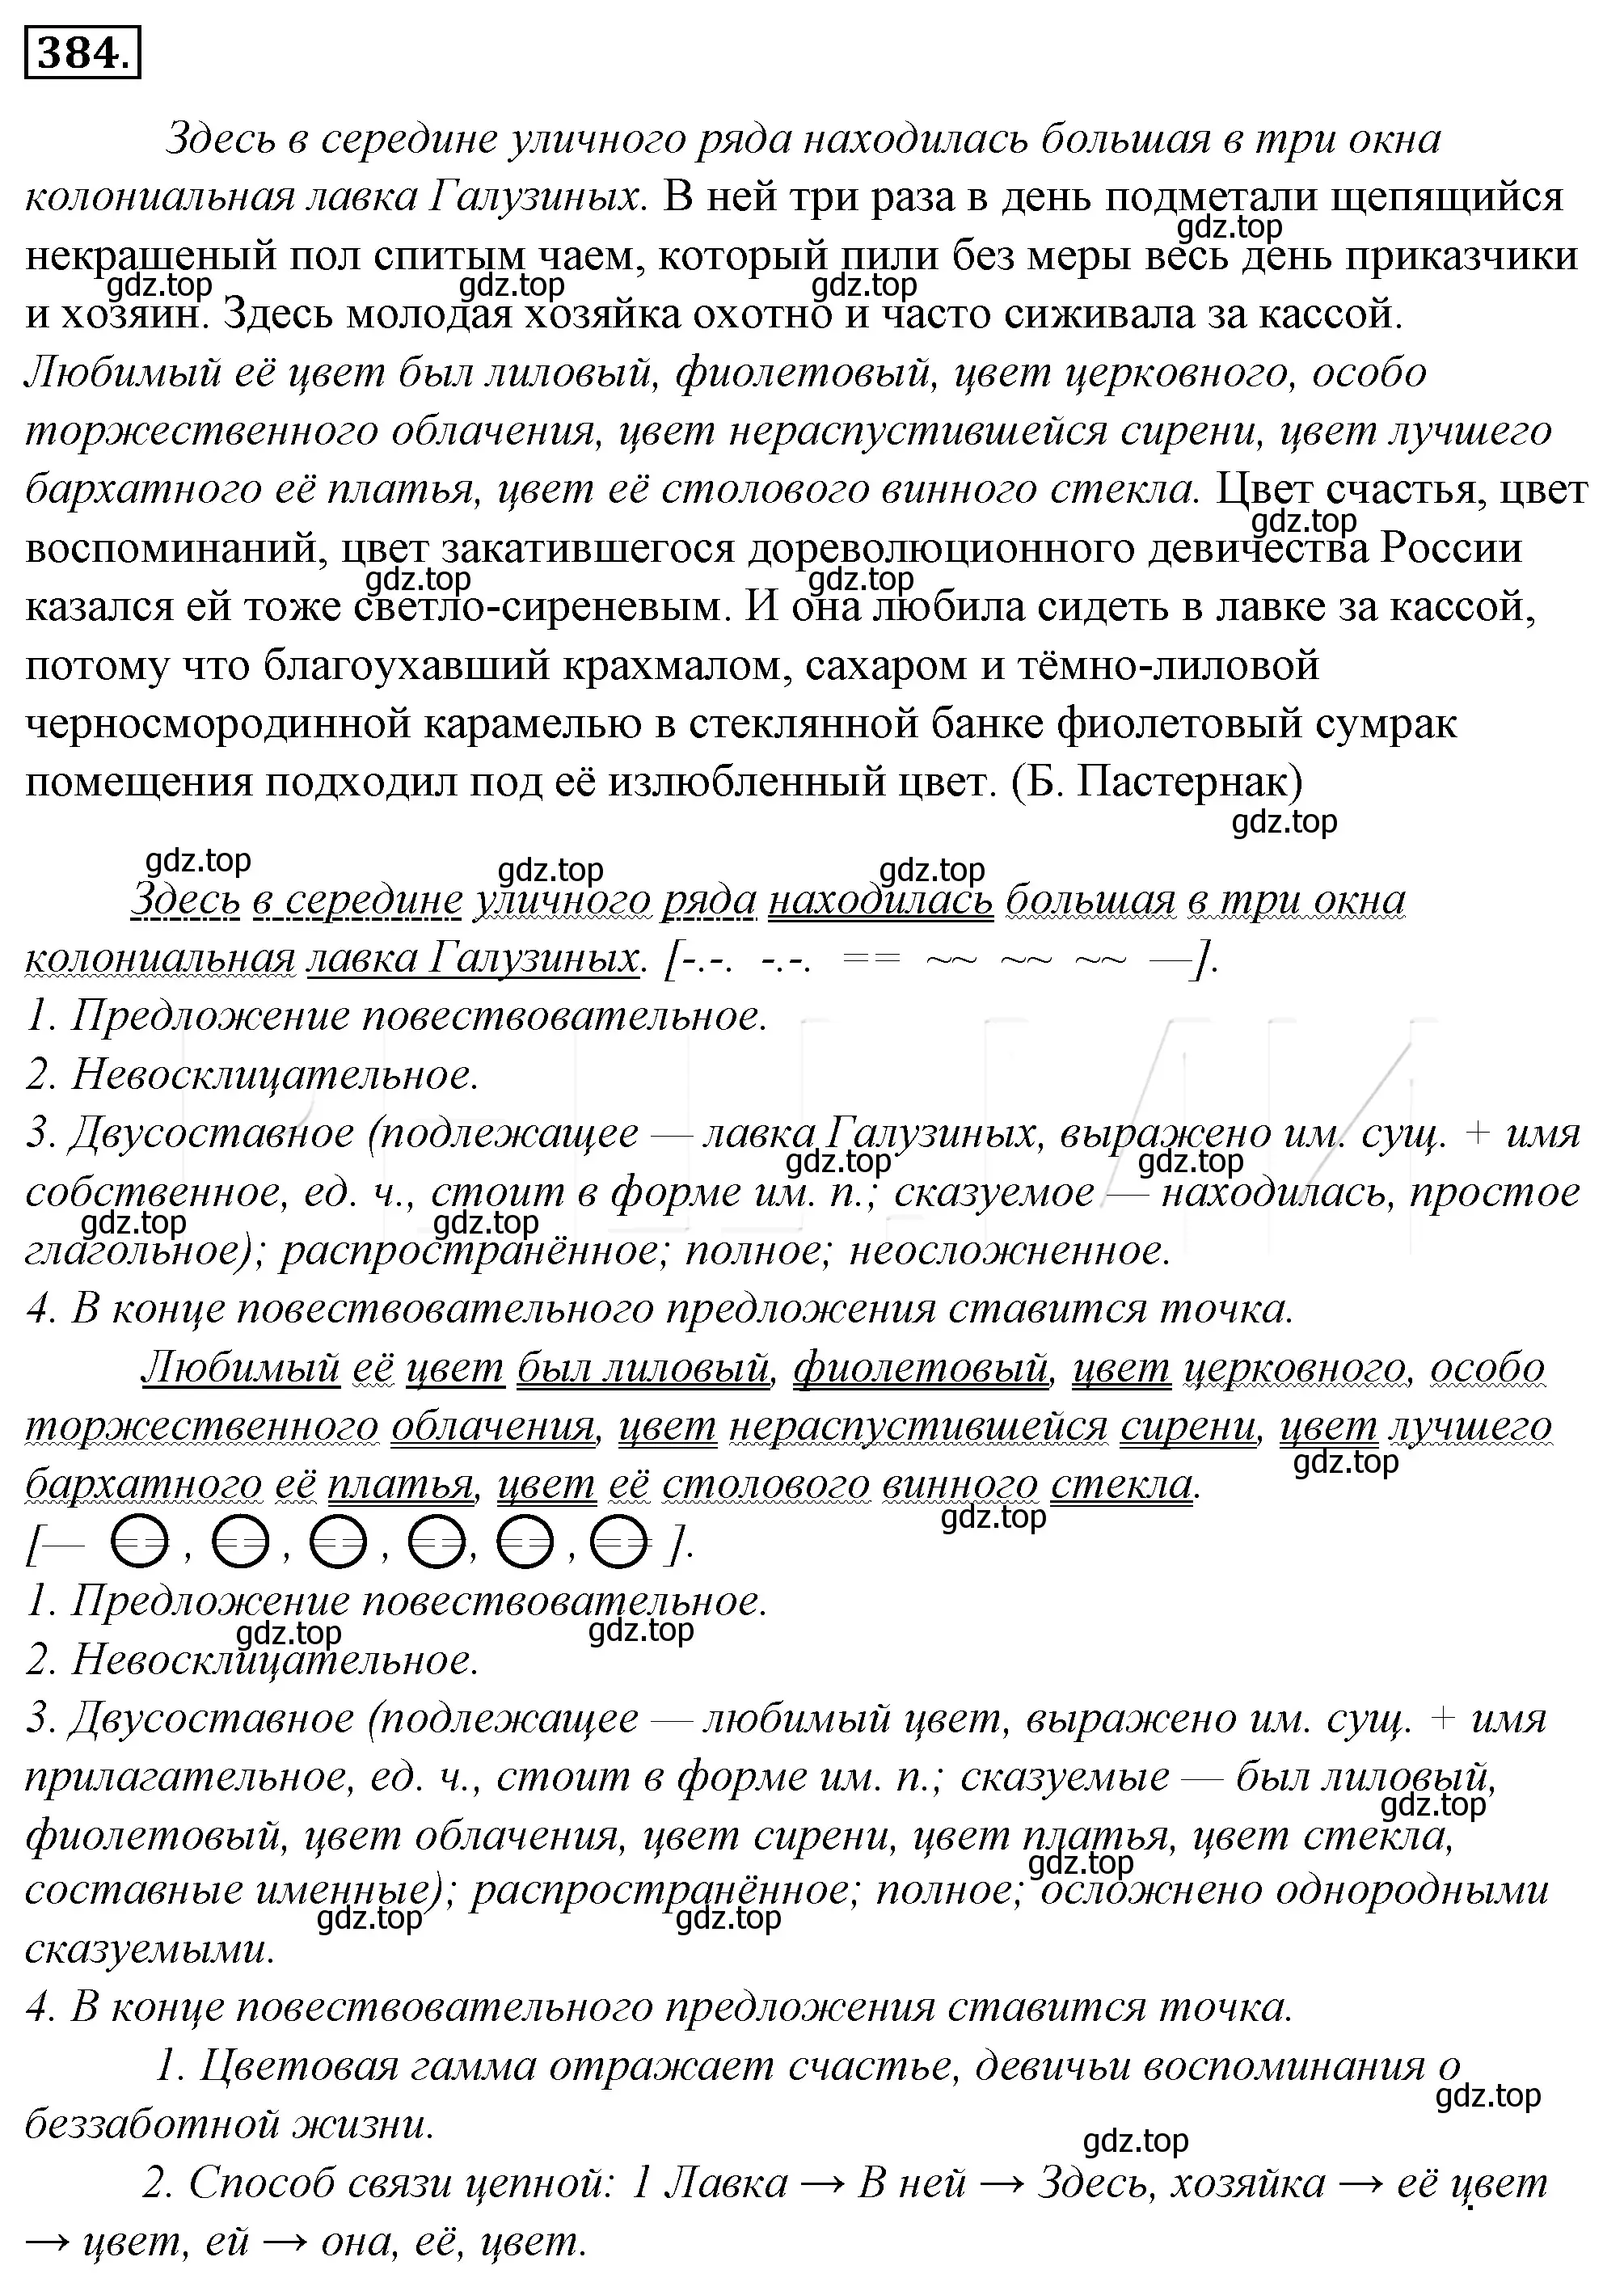 Решение 4. номер 49 (страница 60) гдз по русскому языку 10-11 класс Гольцова, Шамшин, учебник 2 часть